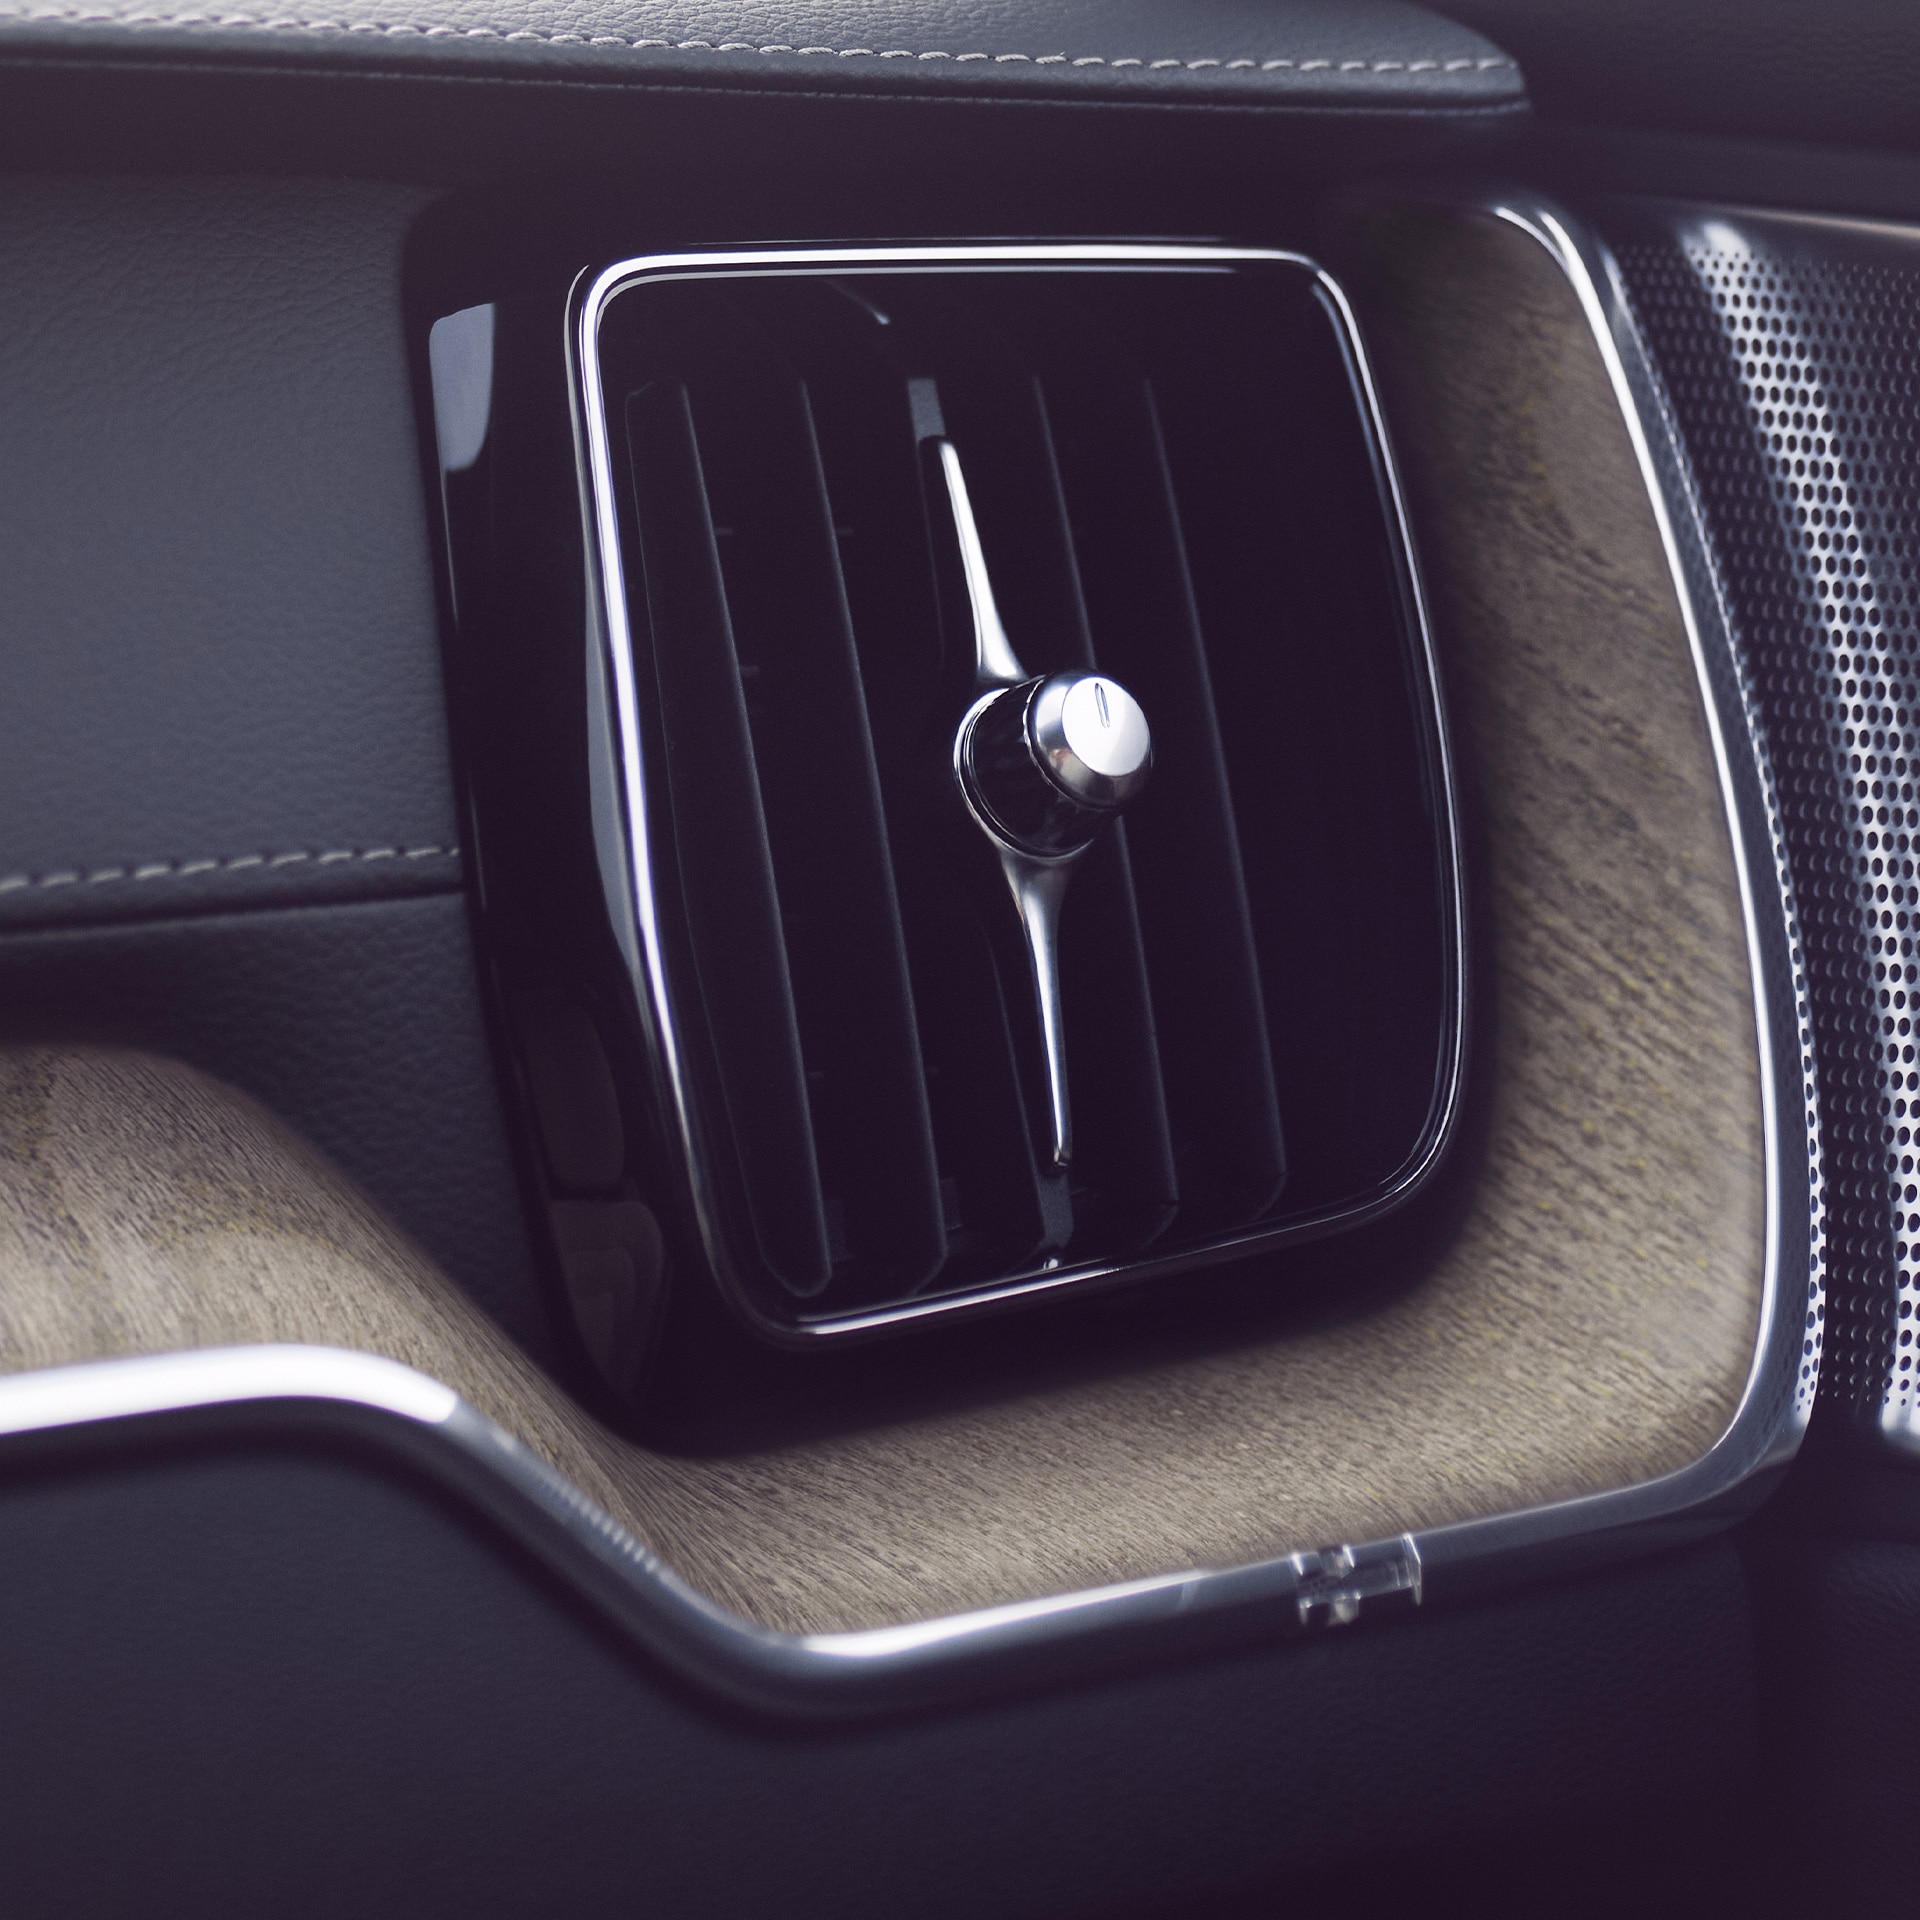 Hệ thống lọc khí tiên tiến trong xe Volvo XC60 giúp bạn và người ngồi trong xe hít thở luồng không khí trong lành và khỏe mạnh hơn.